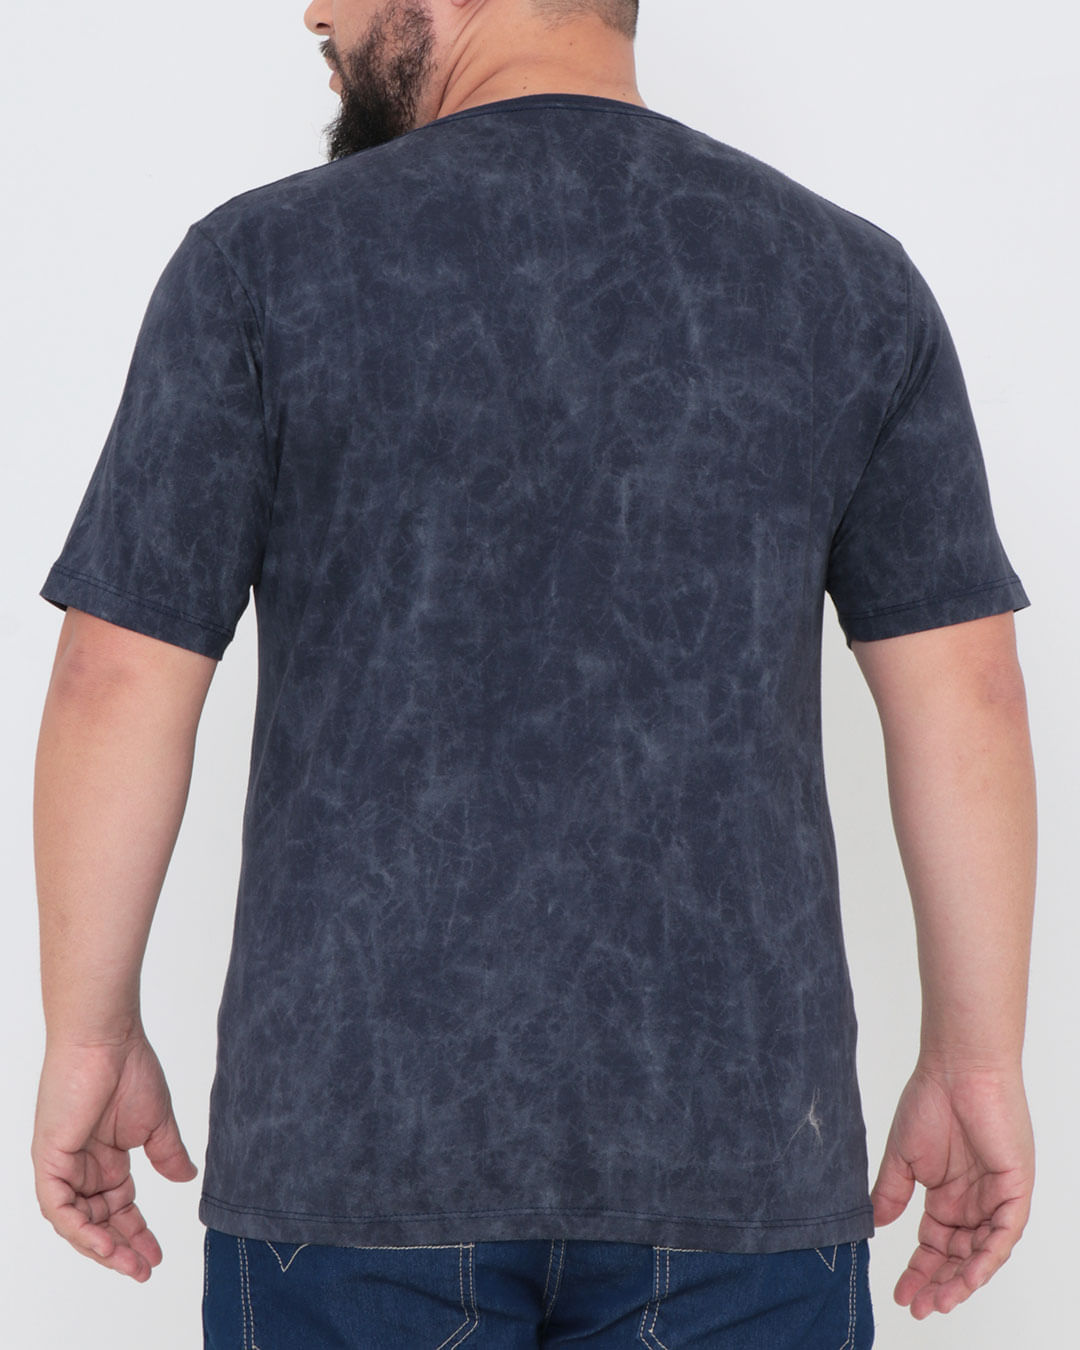 Camiseta-Plus-Size-Marmorizada-Manga-Curta-Azul-Escuro